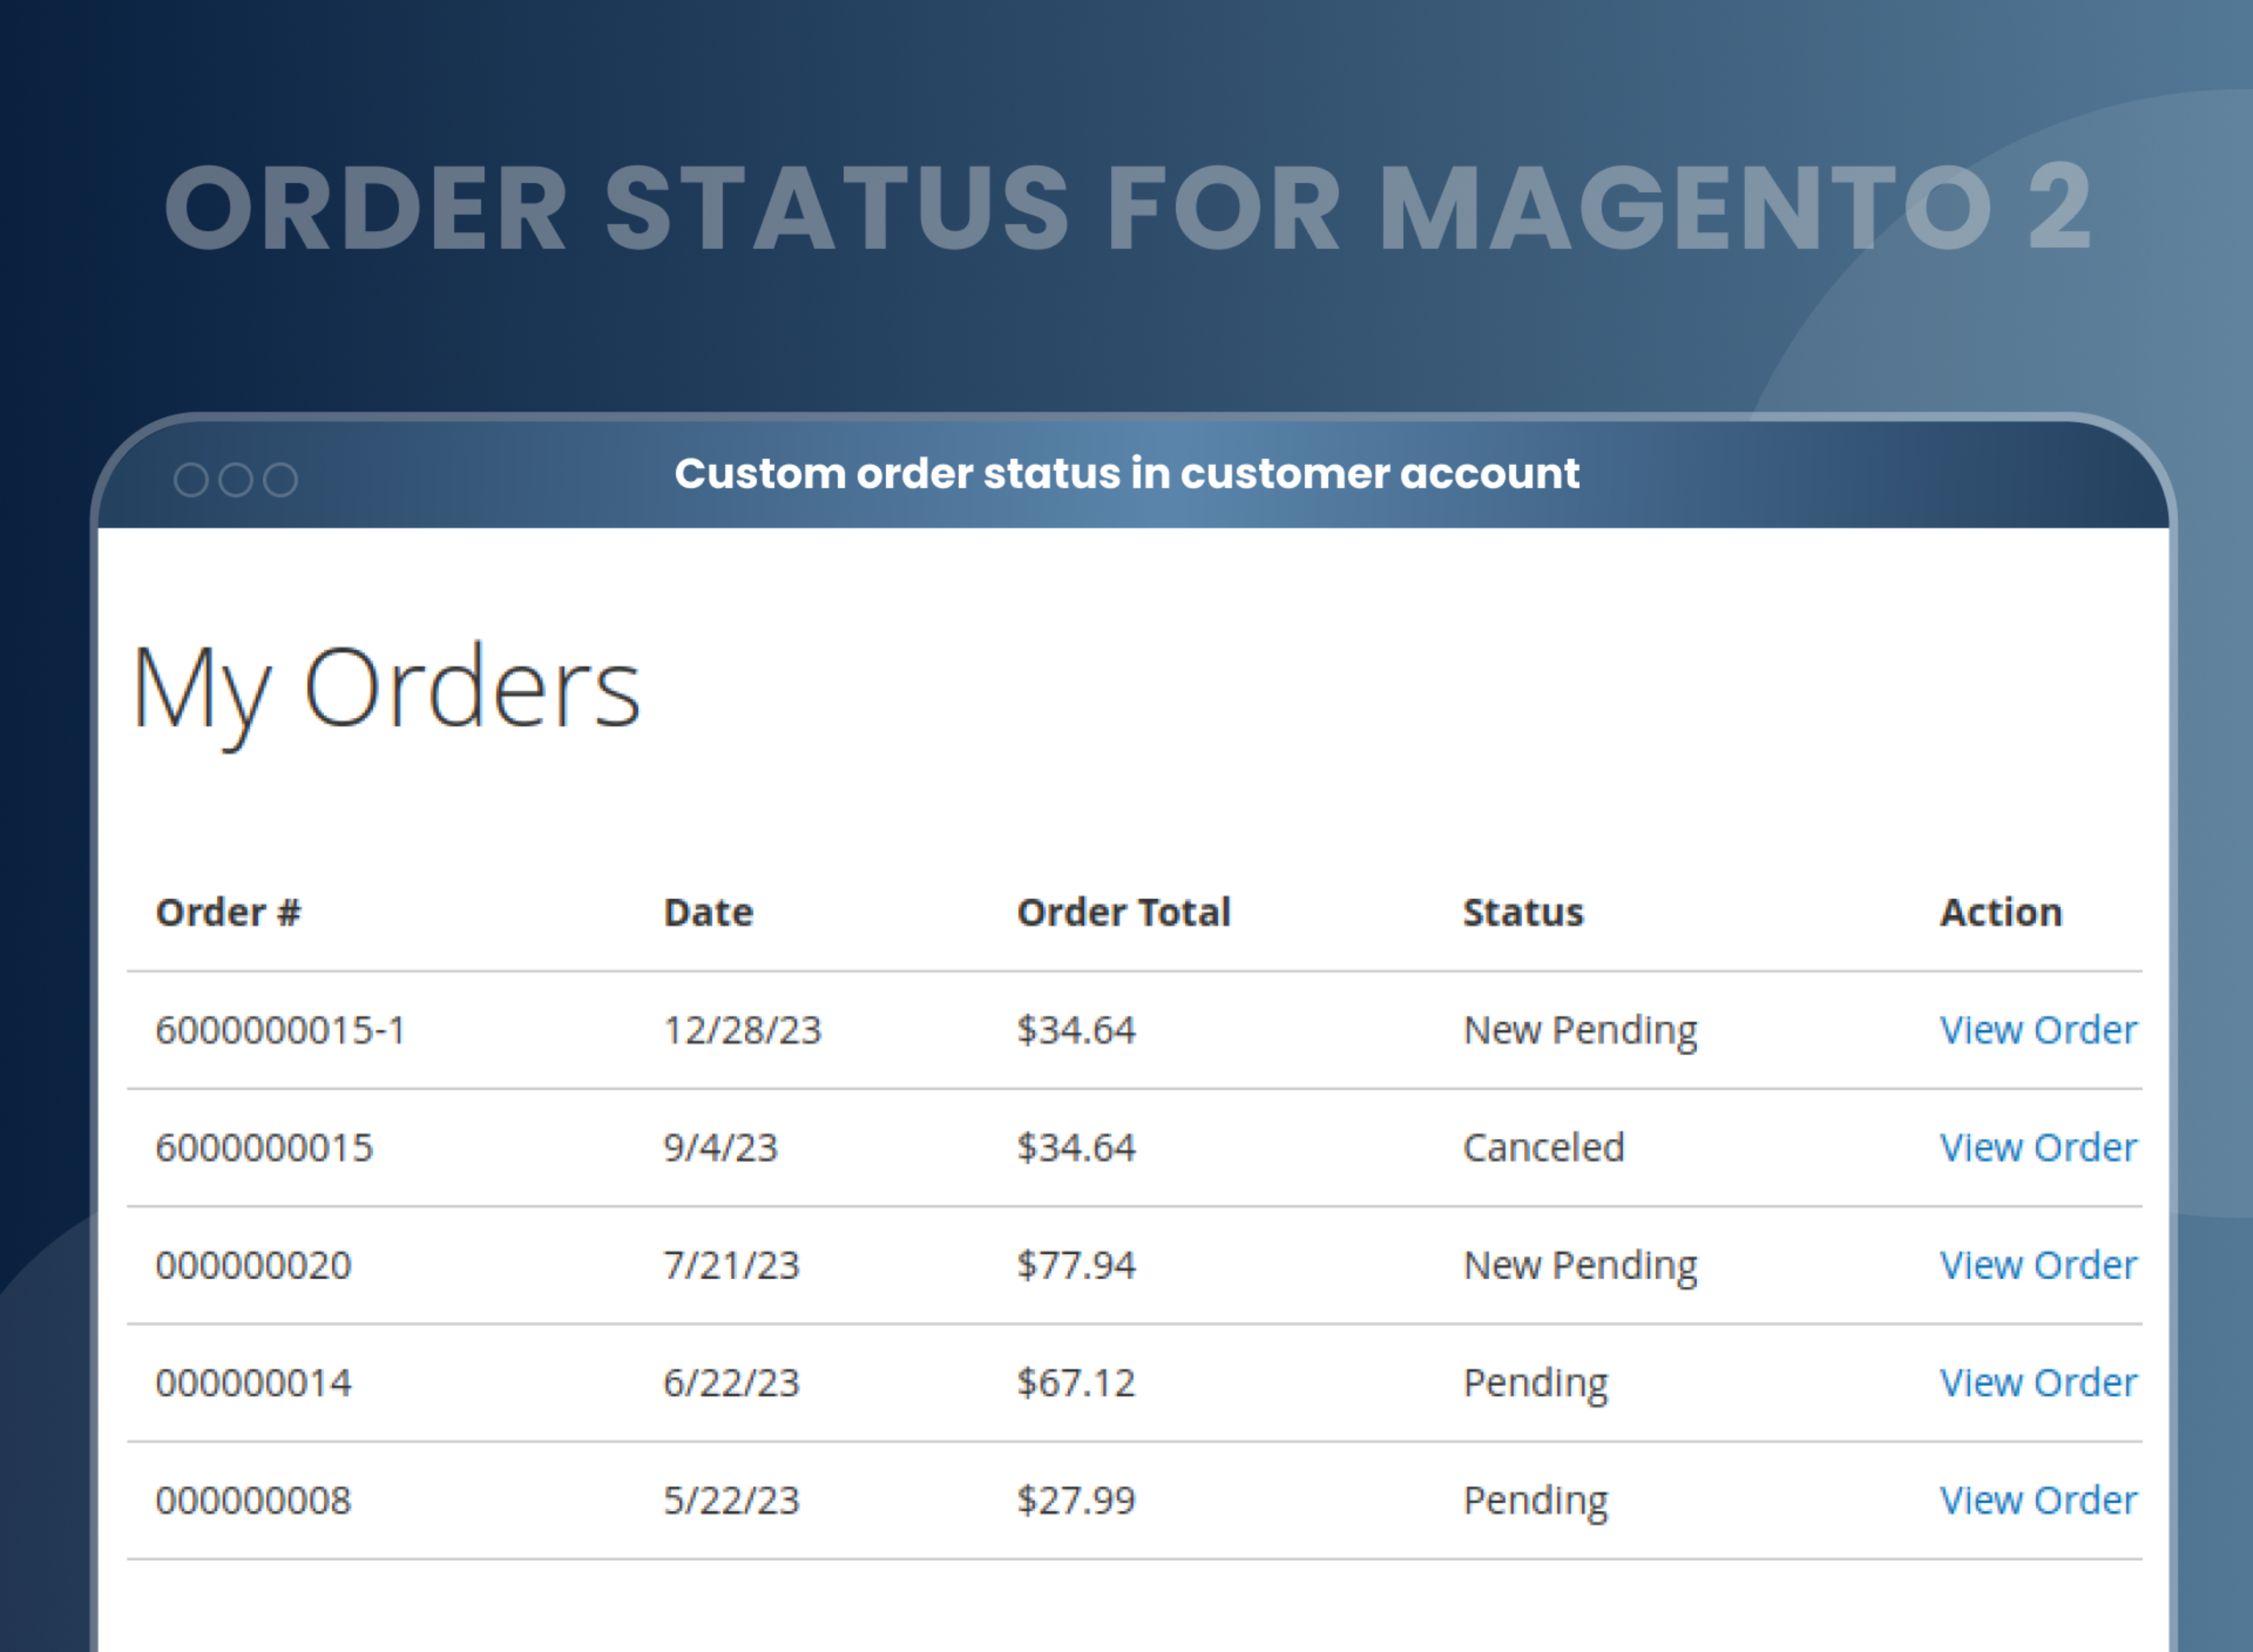 Custom order status in customer account